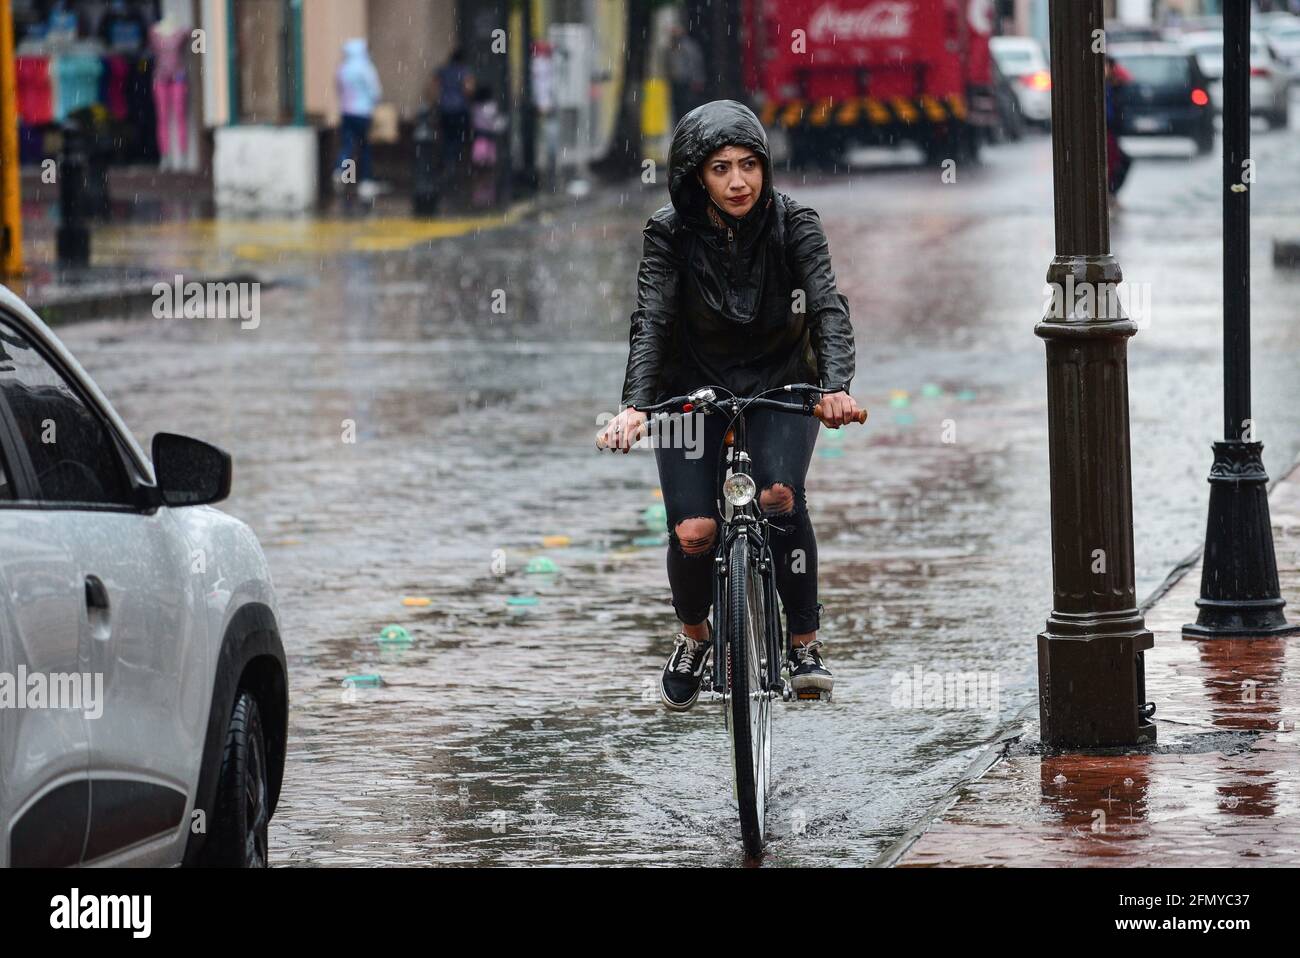 Non Exclusive: TOLUCA, MEXIKO - MAI 12: Eine Frau fährt auf einem Fahrrad mit Regenmantel bedeckt, da die Stadt mit starken Regenfällen dämmerte und mehr Regenfälle sind Stockfoto